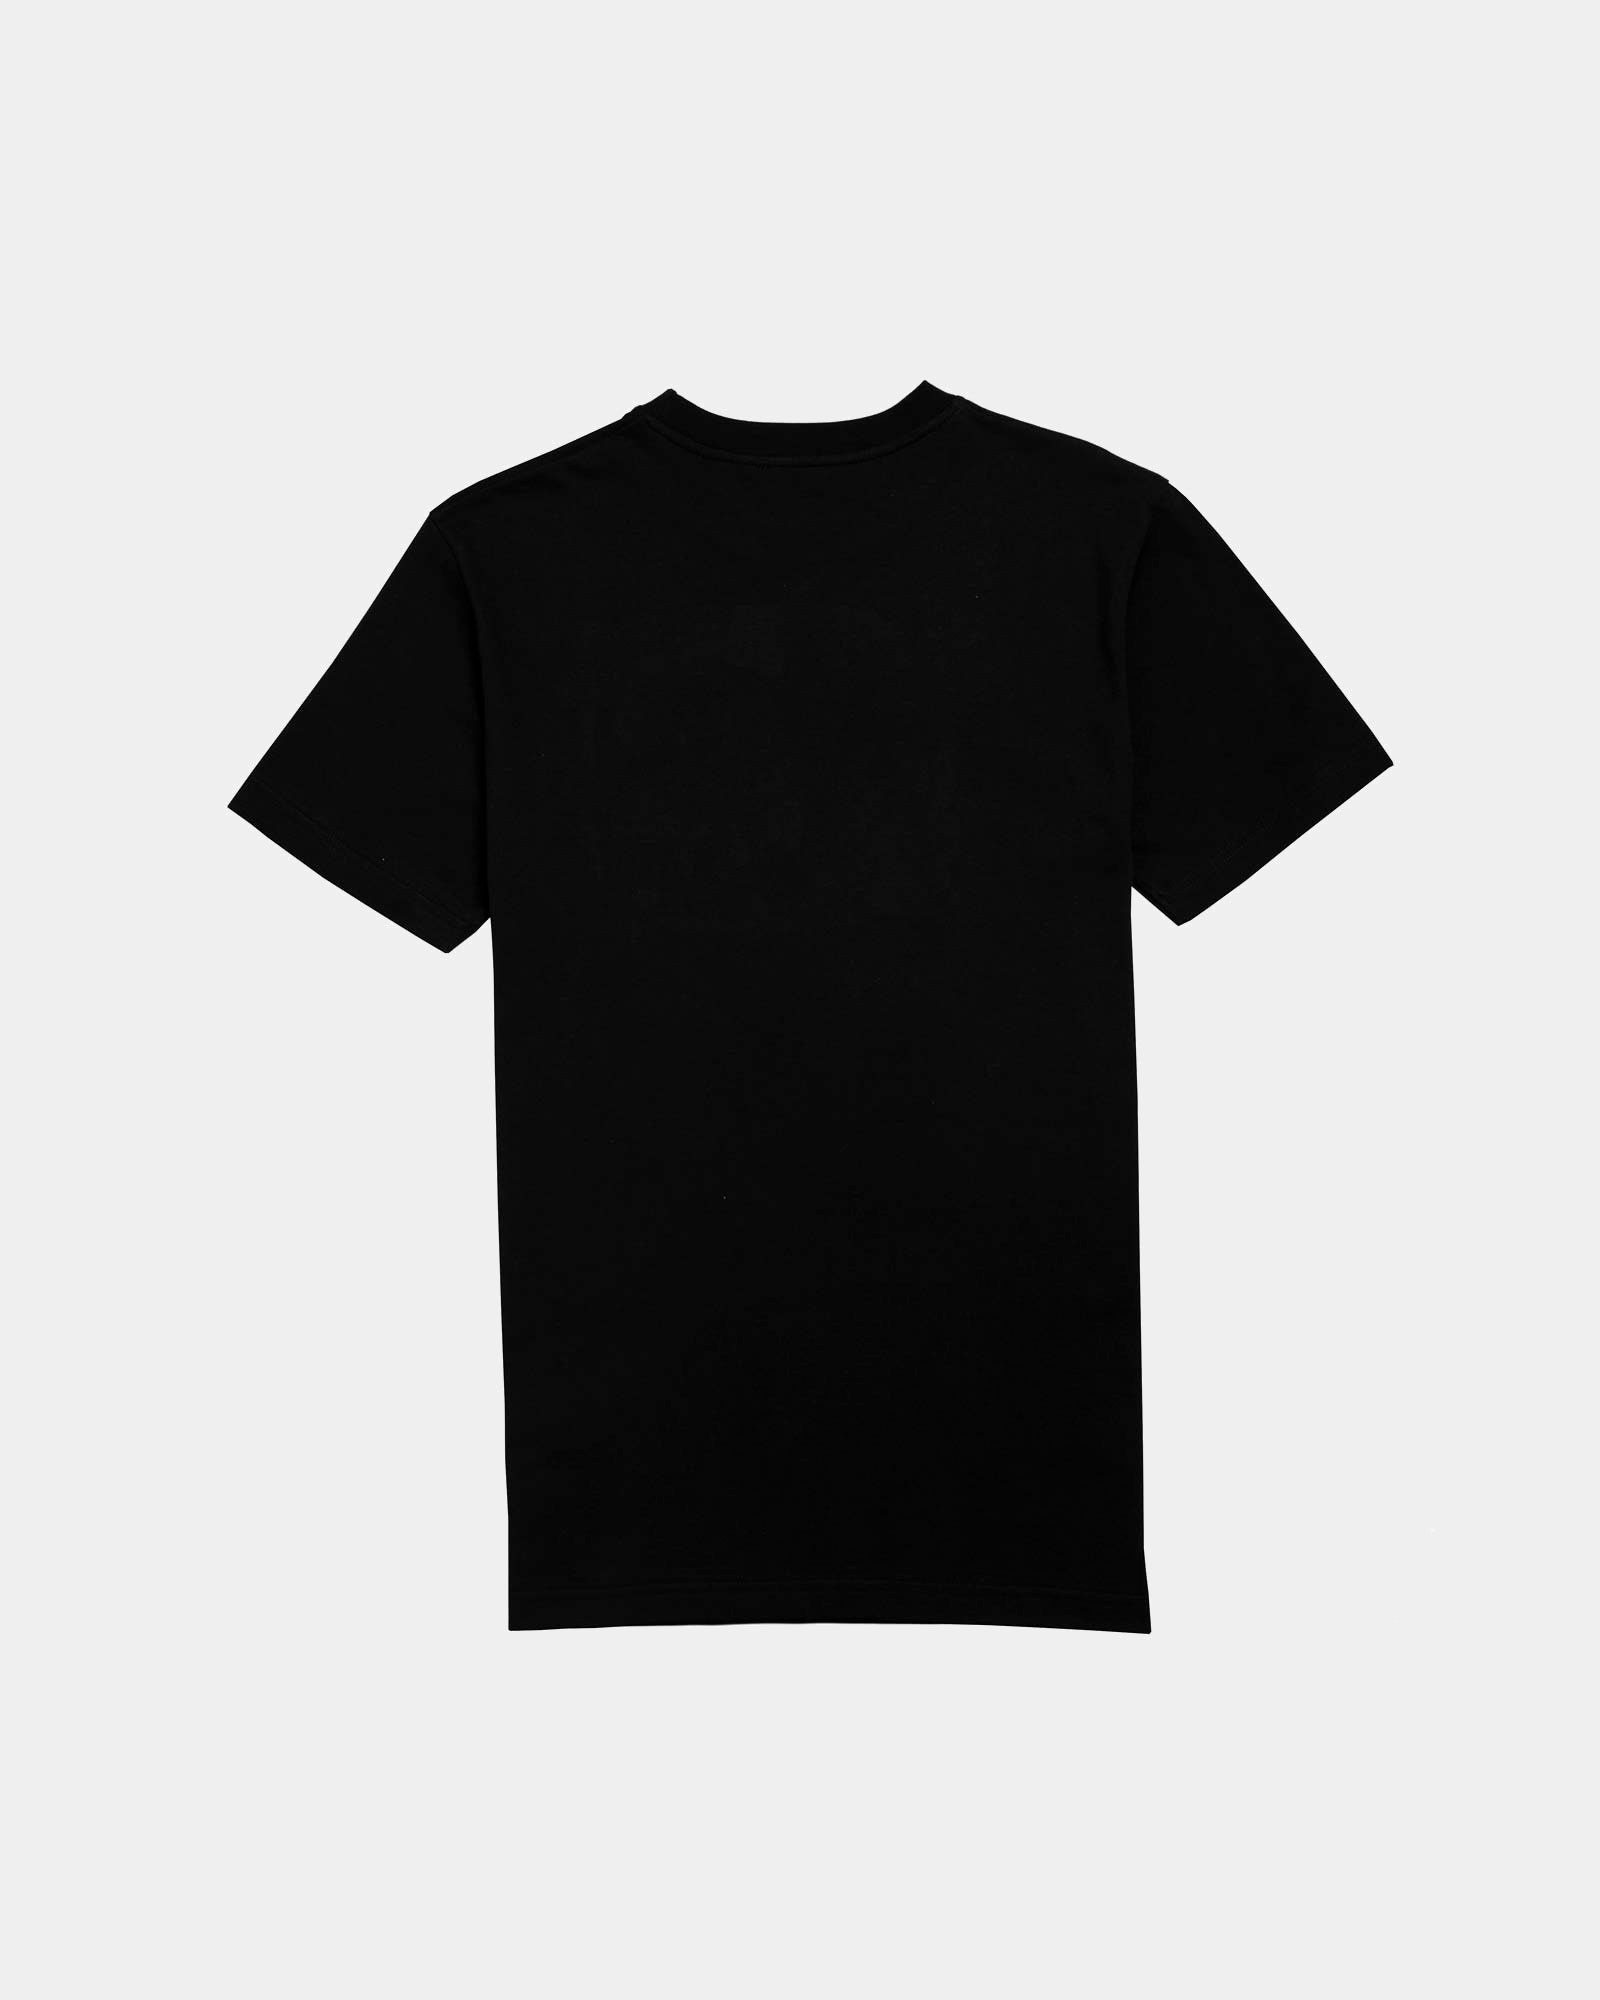 Camiseta Negra Bordado Calavera Verde - Camisetas Slim Fit - Ropa Online - Dicci